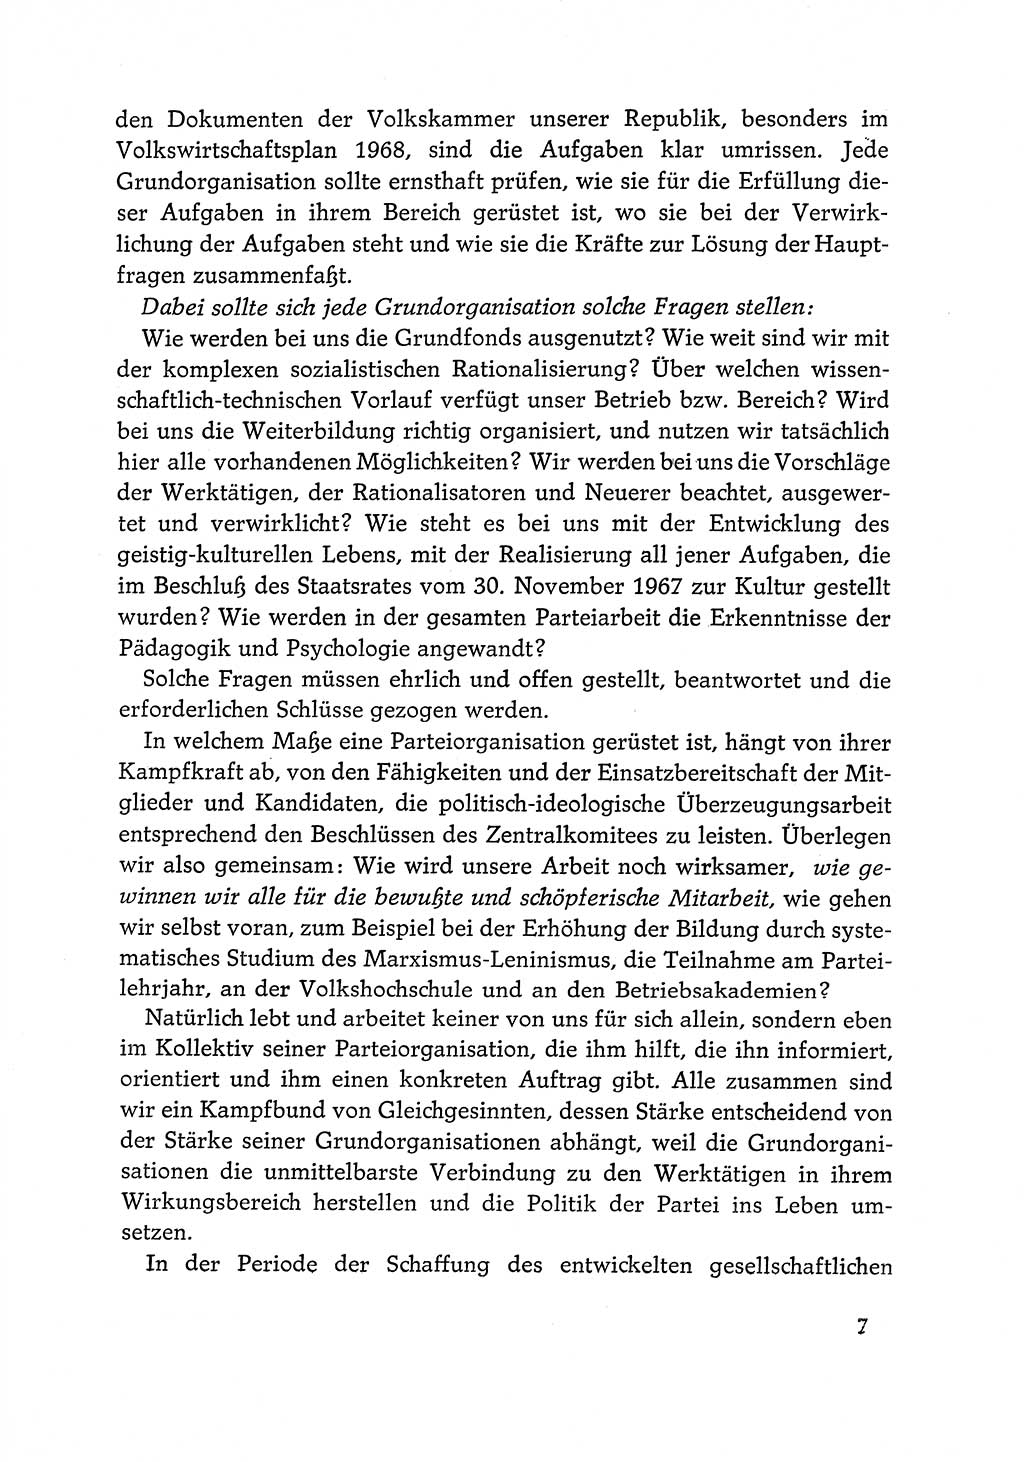 Dokumente der Sozialistischen Einheitspartei Deutschlands (SED) [Deutsche Demokratische Republik (DDR)] 1968-1969, Seite 7 (Dok. SED DDR 1968-1969, S. 7)